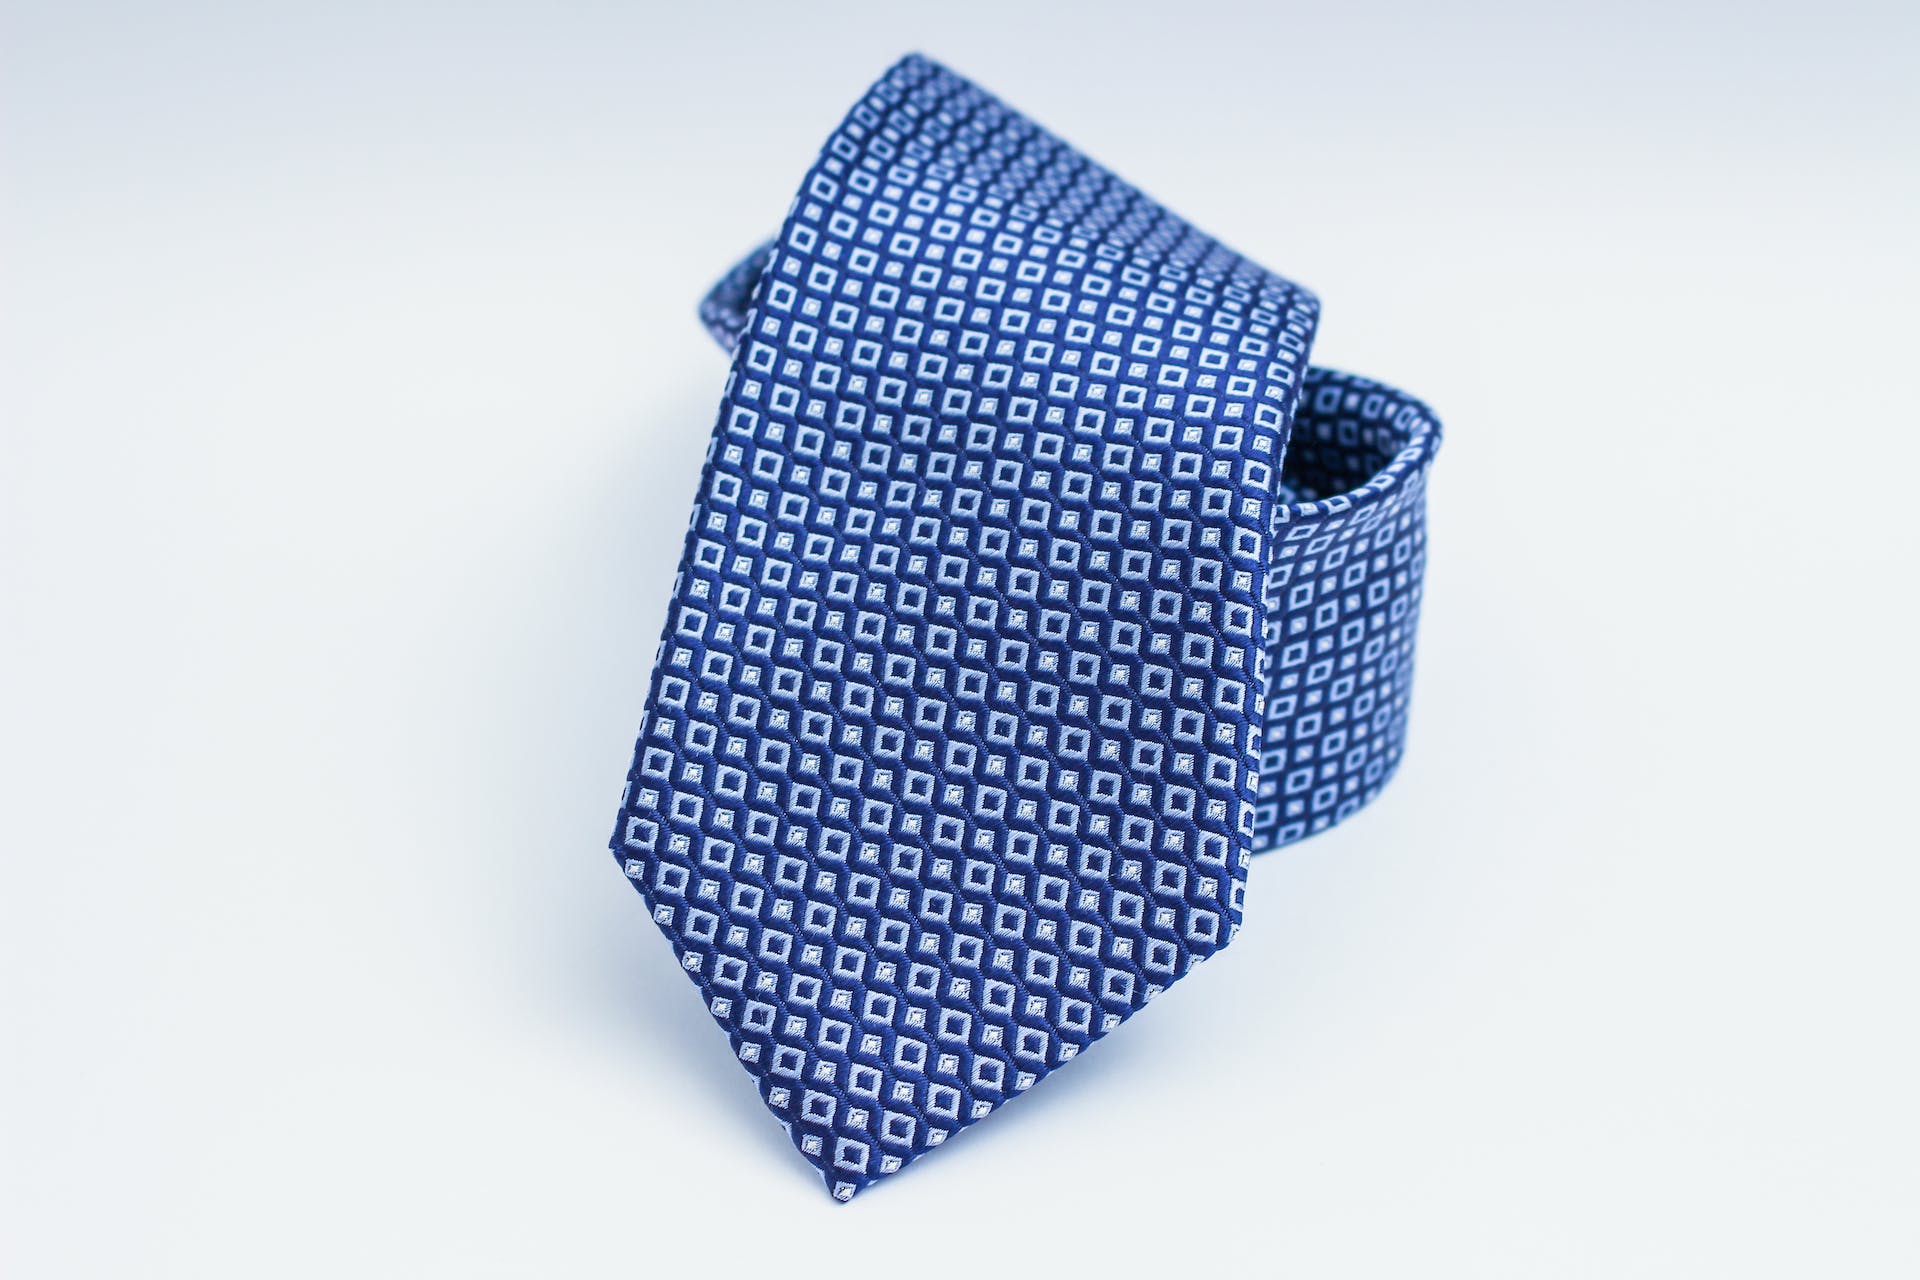 Cravate bleue pour homme | Source : Pexels